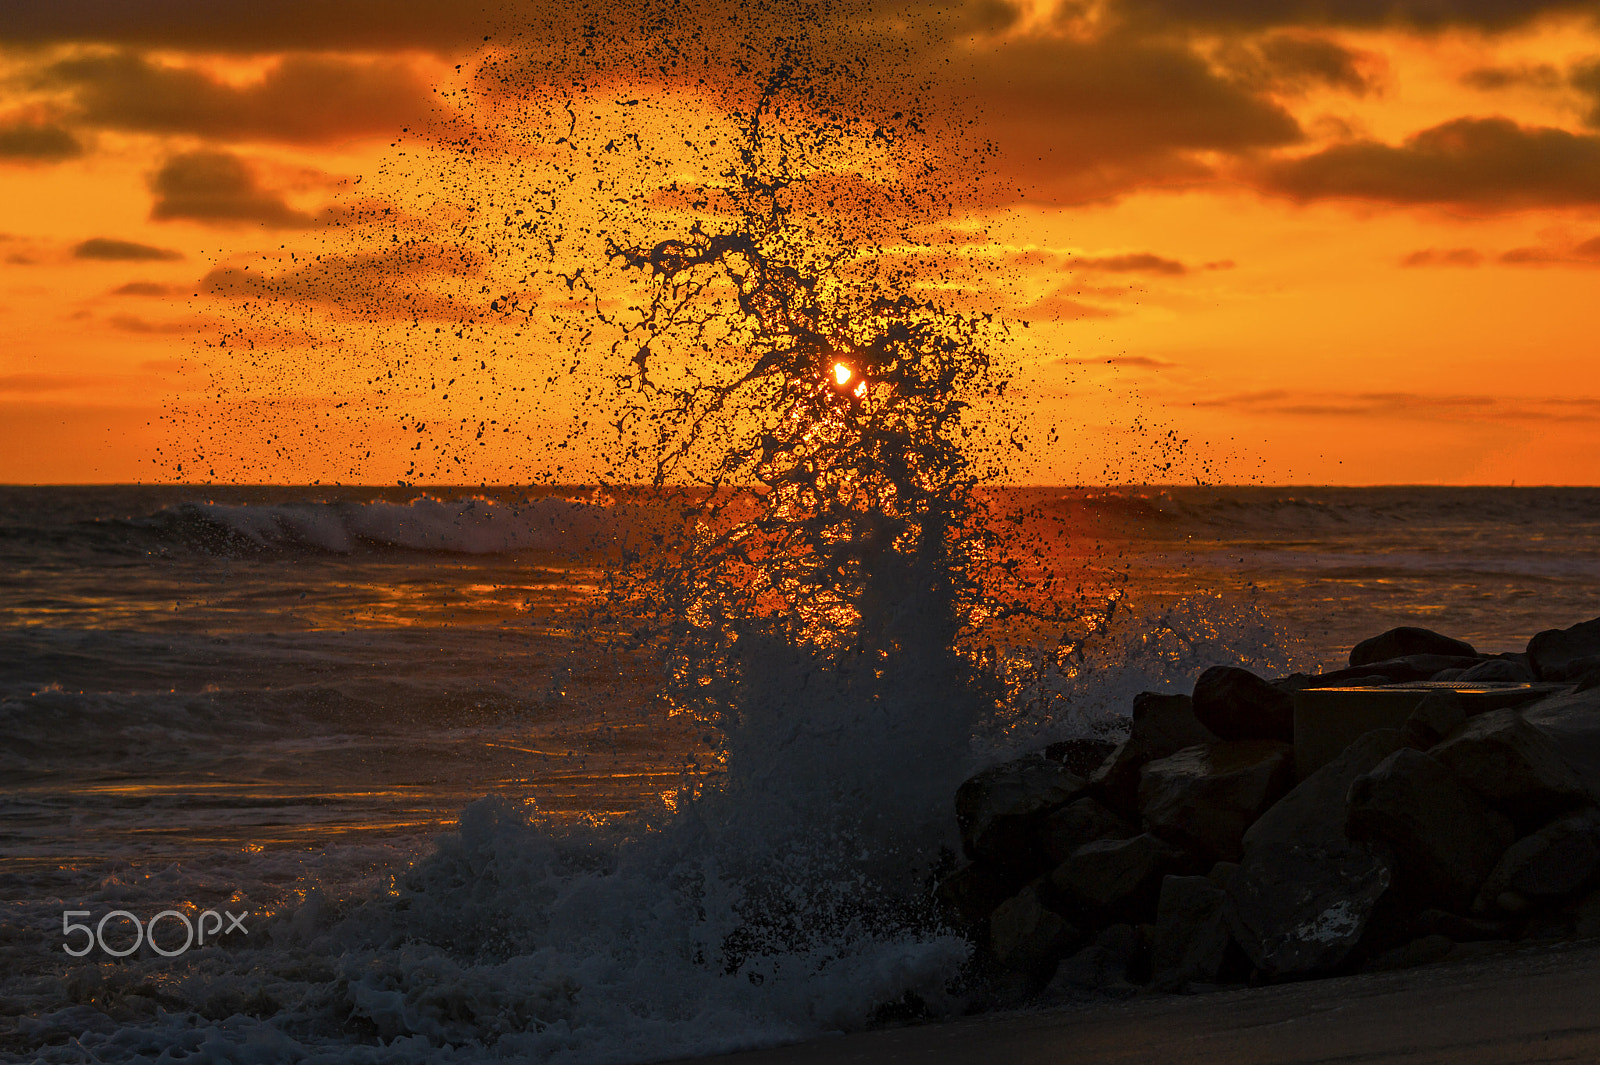 Nikon D3S + Nikon AF-S Nikkor 80-400mm F4.5-5.6G ED VR sample photo. Waves crash at sunset in oceanside - july 1, 2016 photography